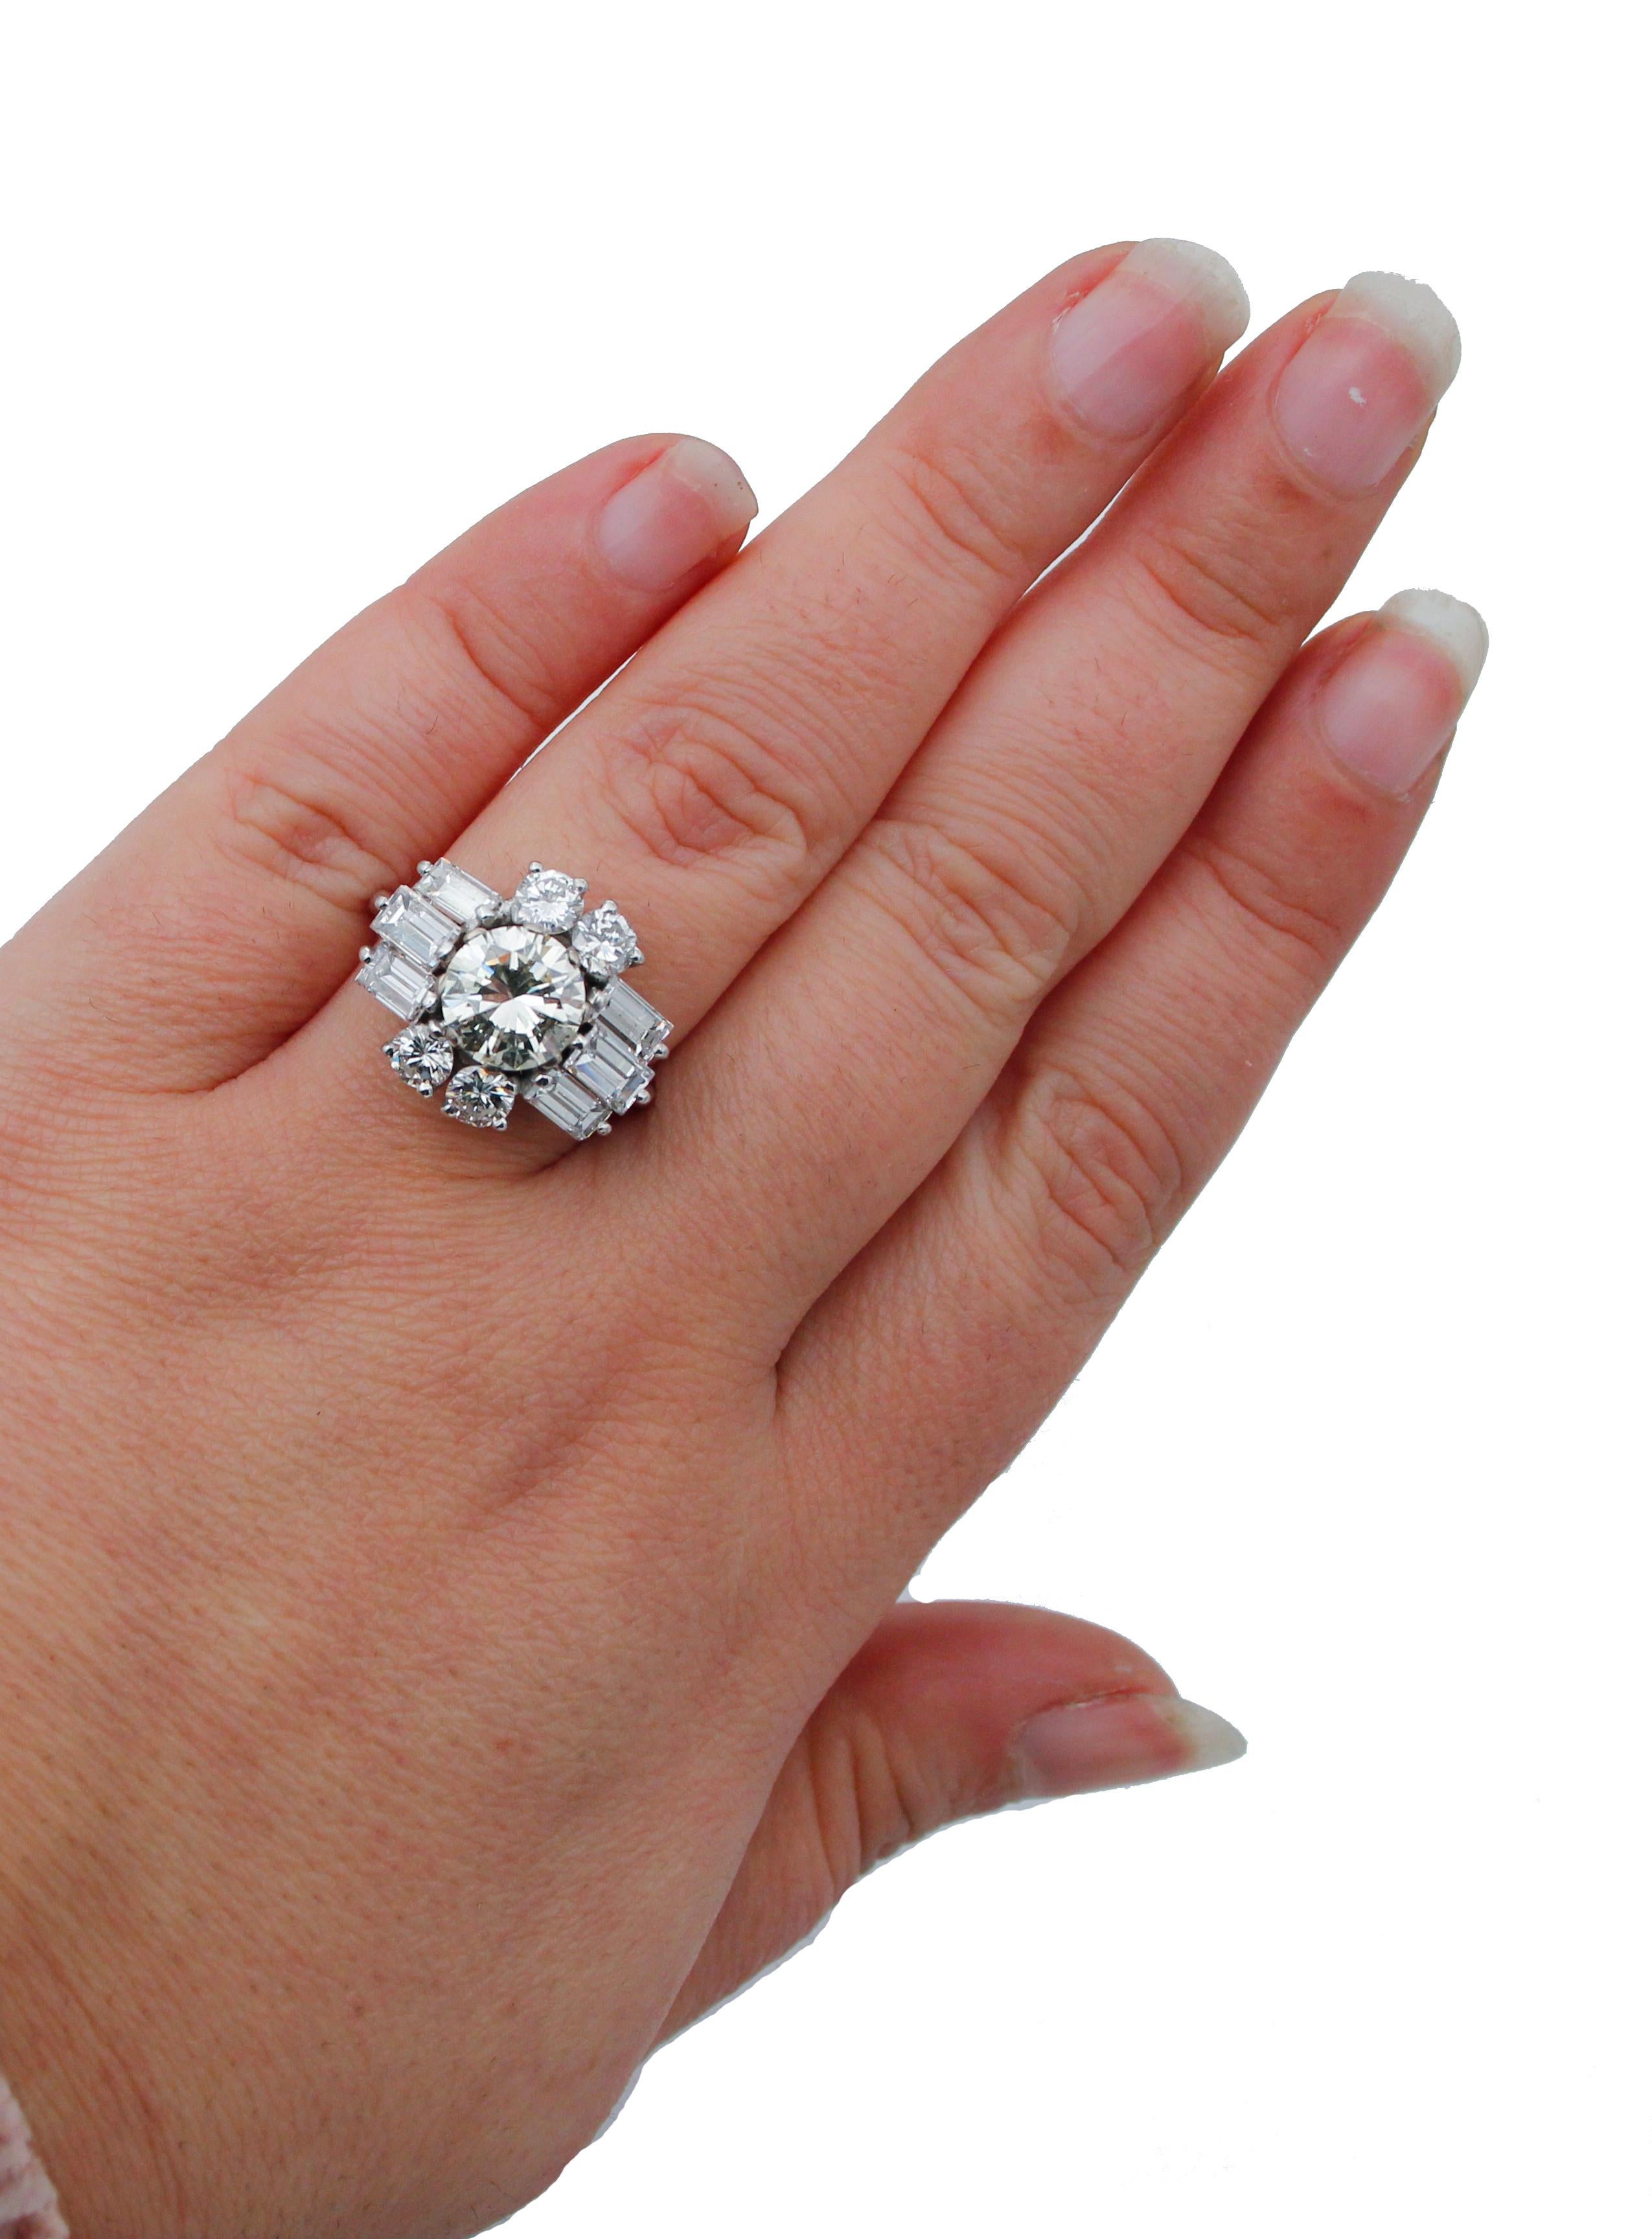 Women's Diamonds, 18 Karat White Gold Ring For Sale